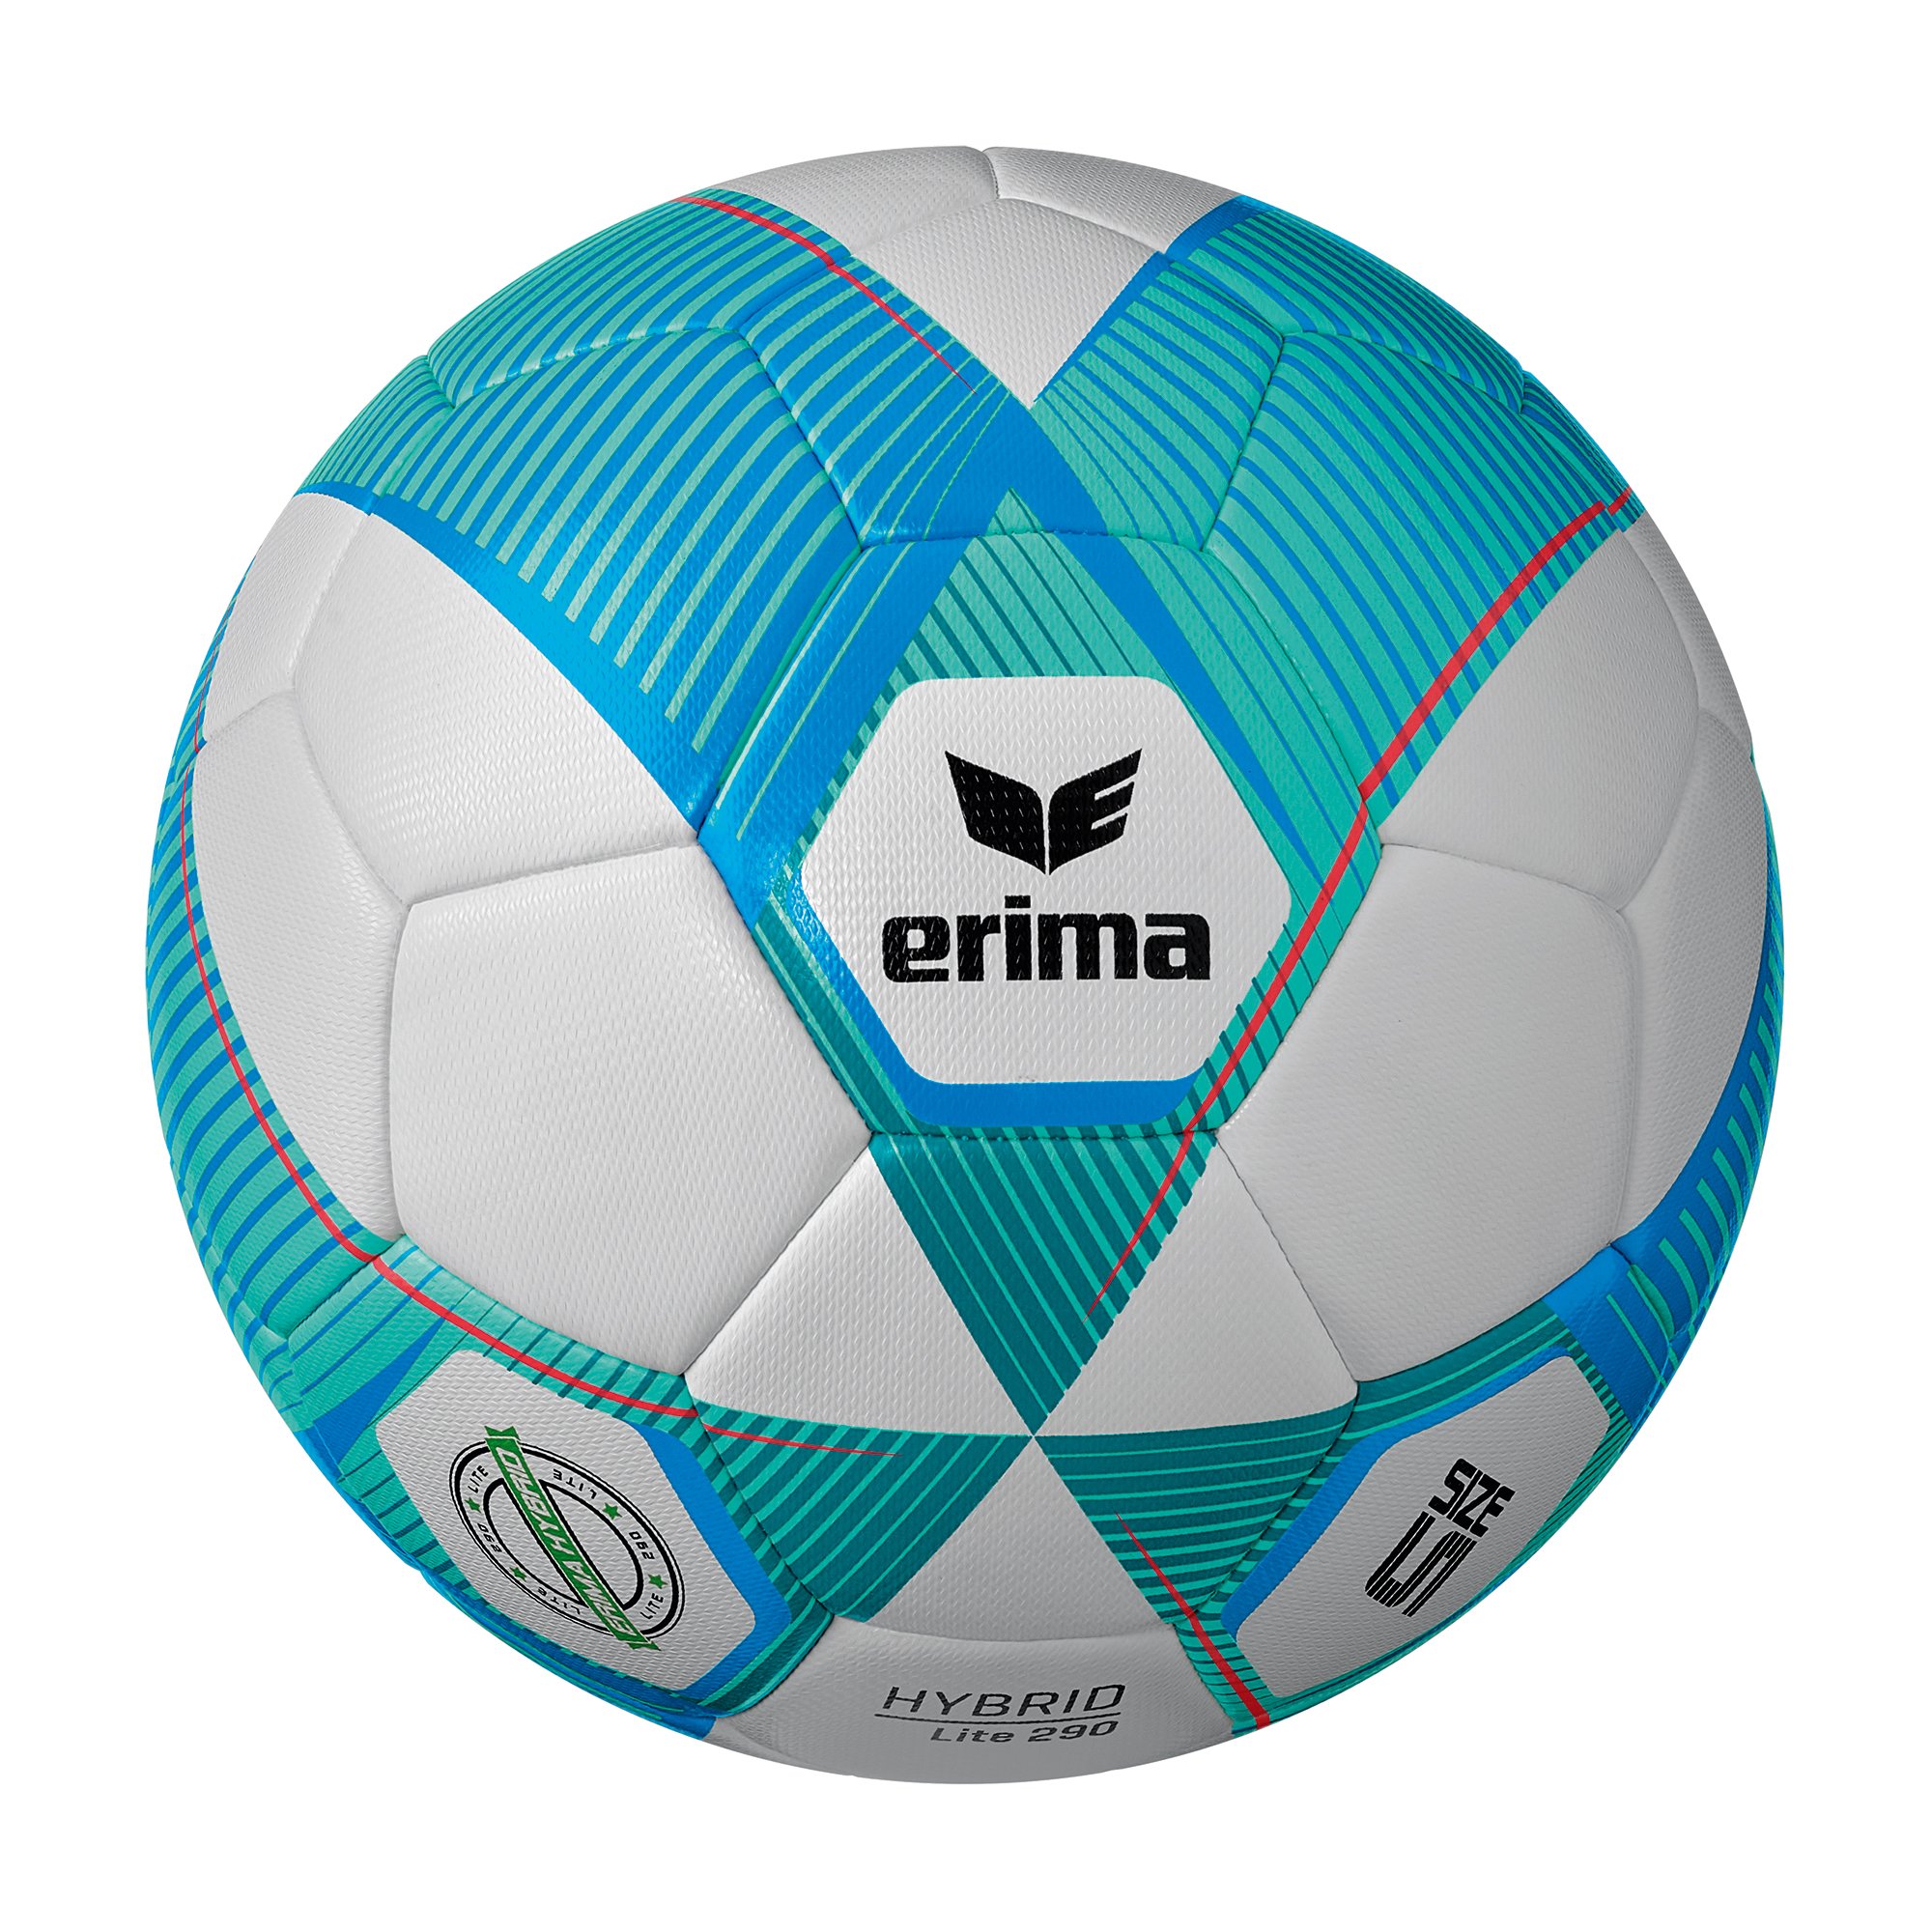 Erima Hybrid Lite 290 Fußball